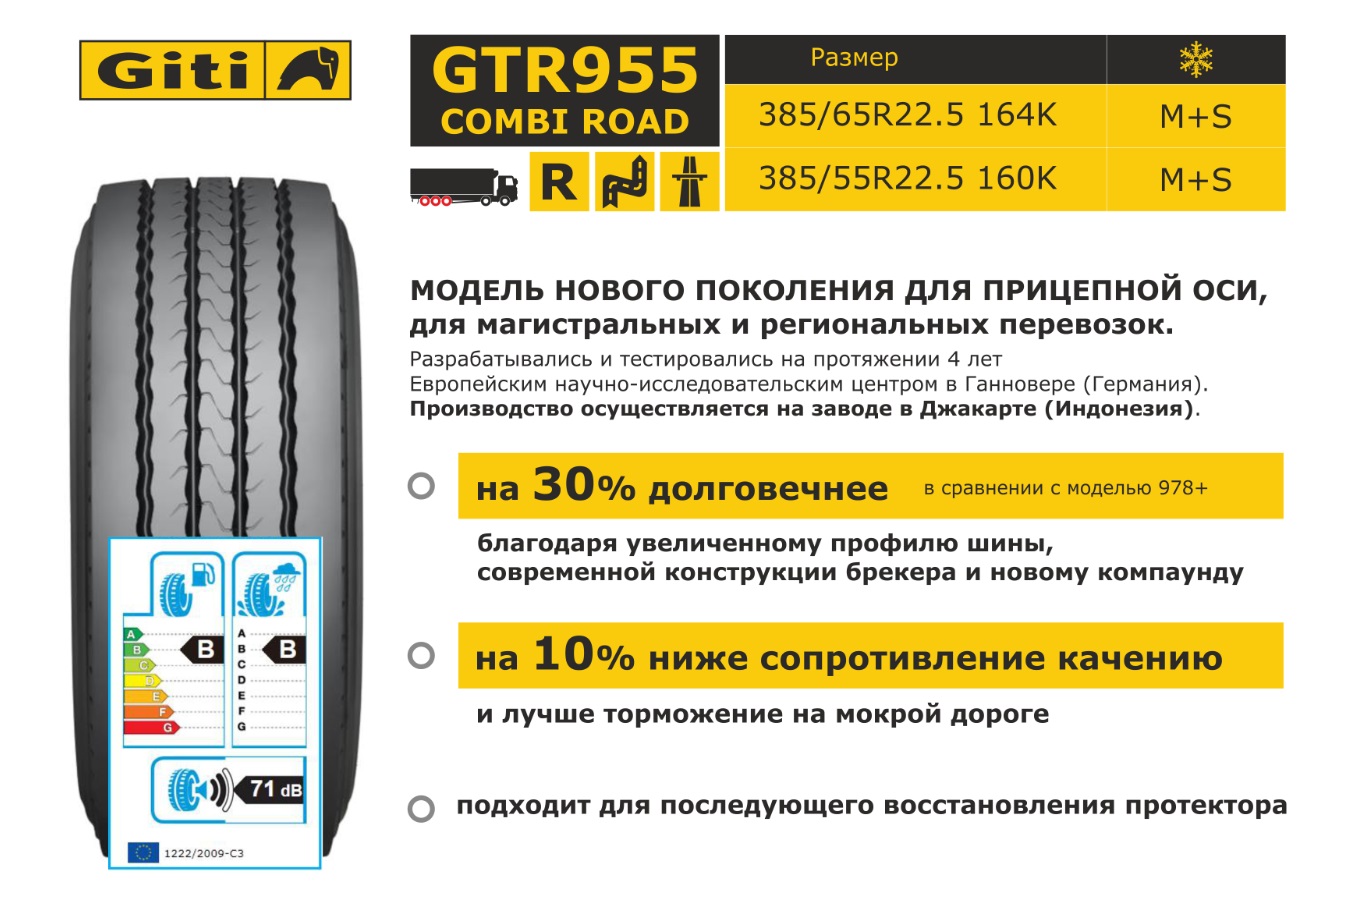 Автошина 385/65R22.5 GTR955 164K M+S - GiTi/GTR955